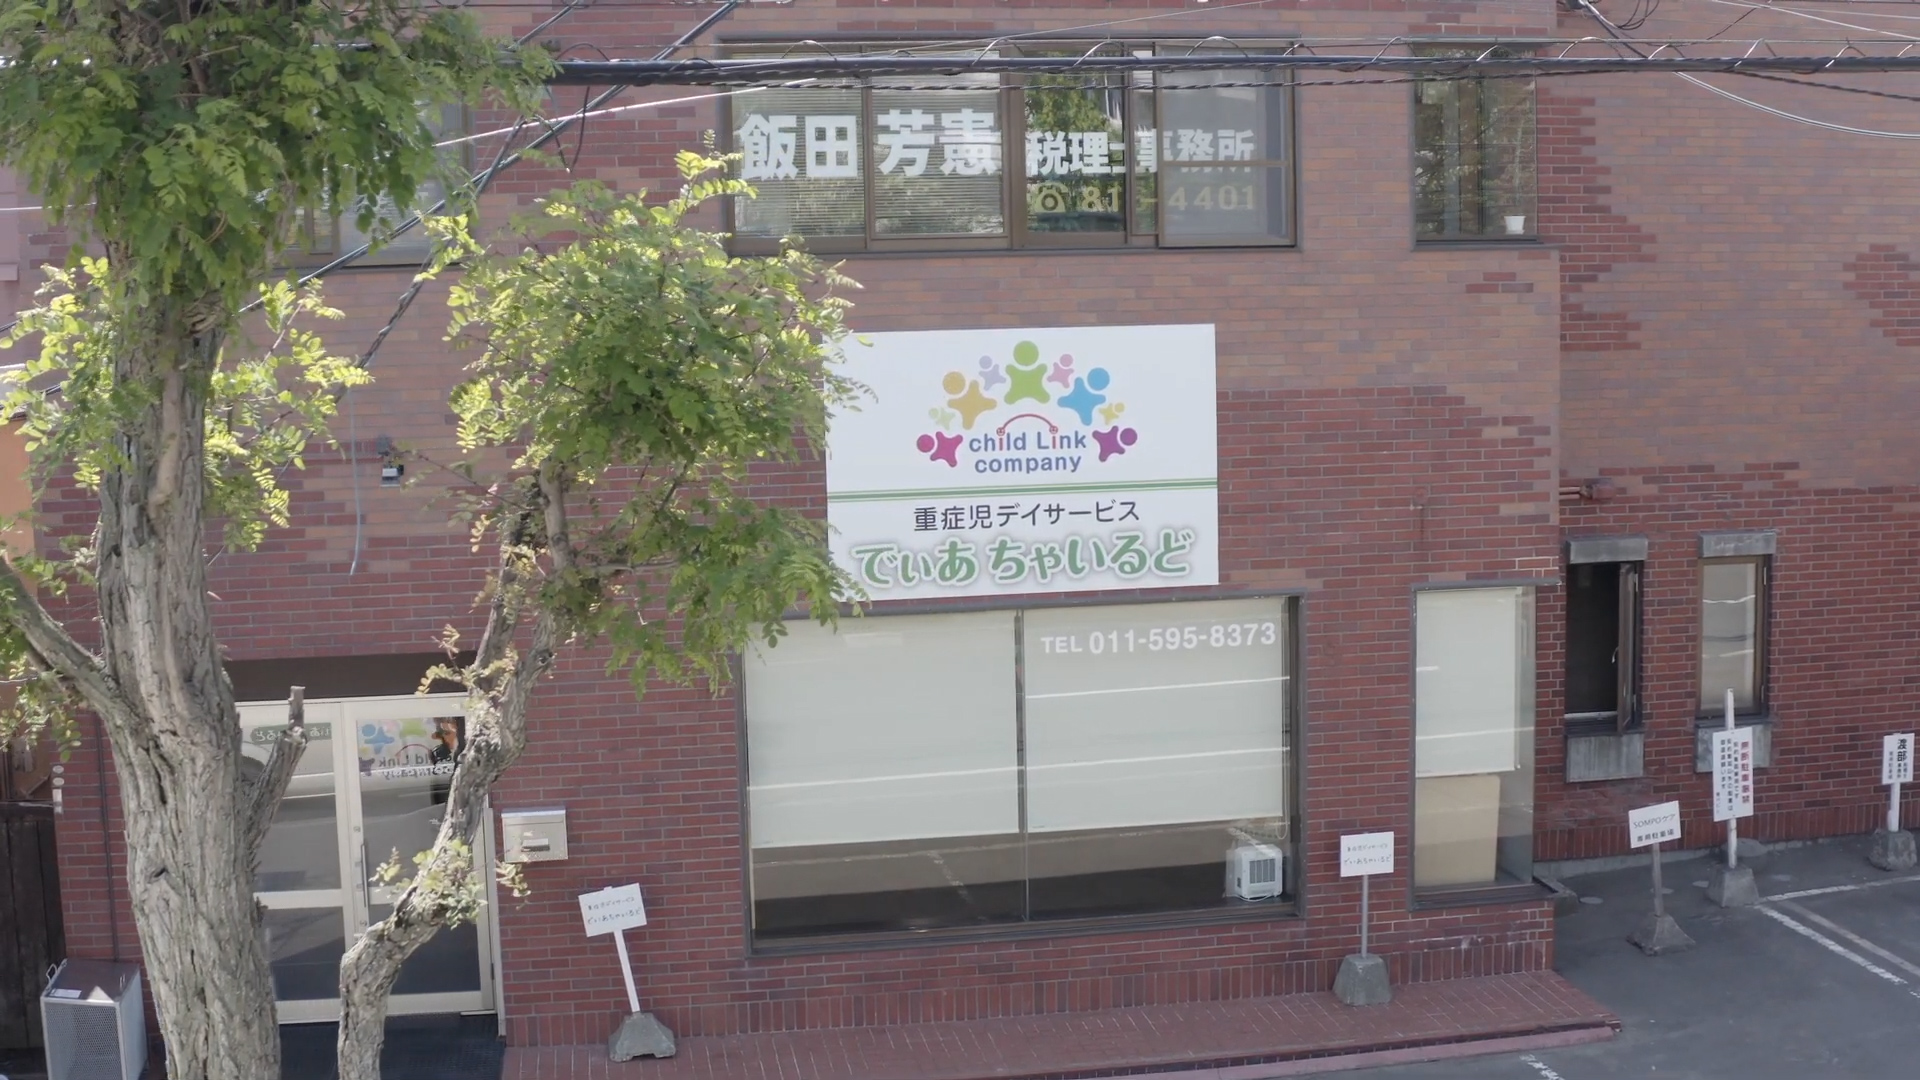 でぃあちゃいるど-札幌市-南区-重症心身障害児様のための重症児デイサービス-株式会社チャイルドリンク